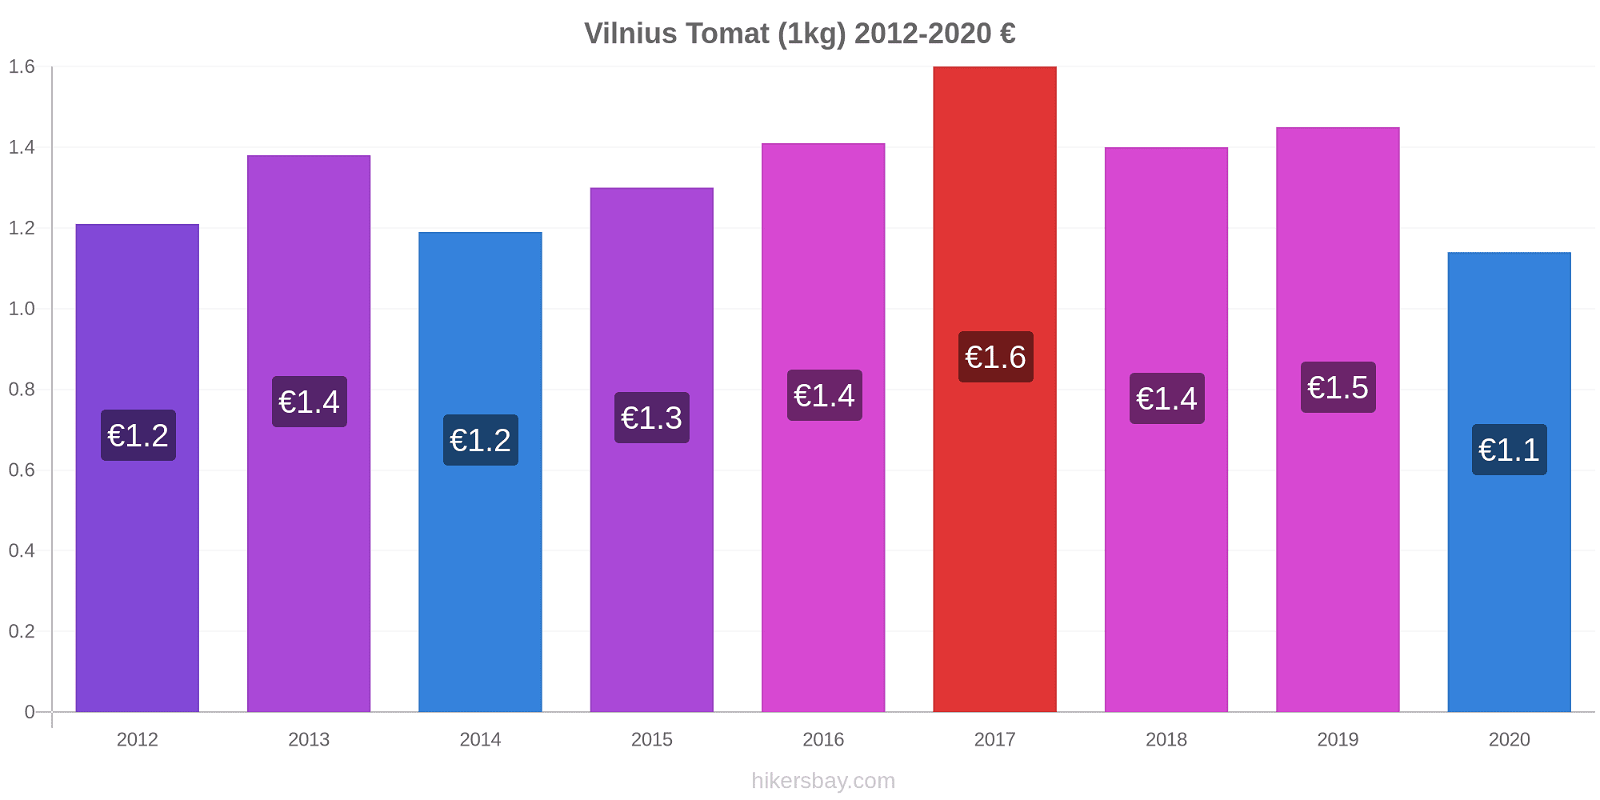 Vilnius perubahan harga Tomat (1kg) hikersbay.com